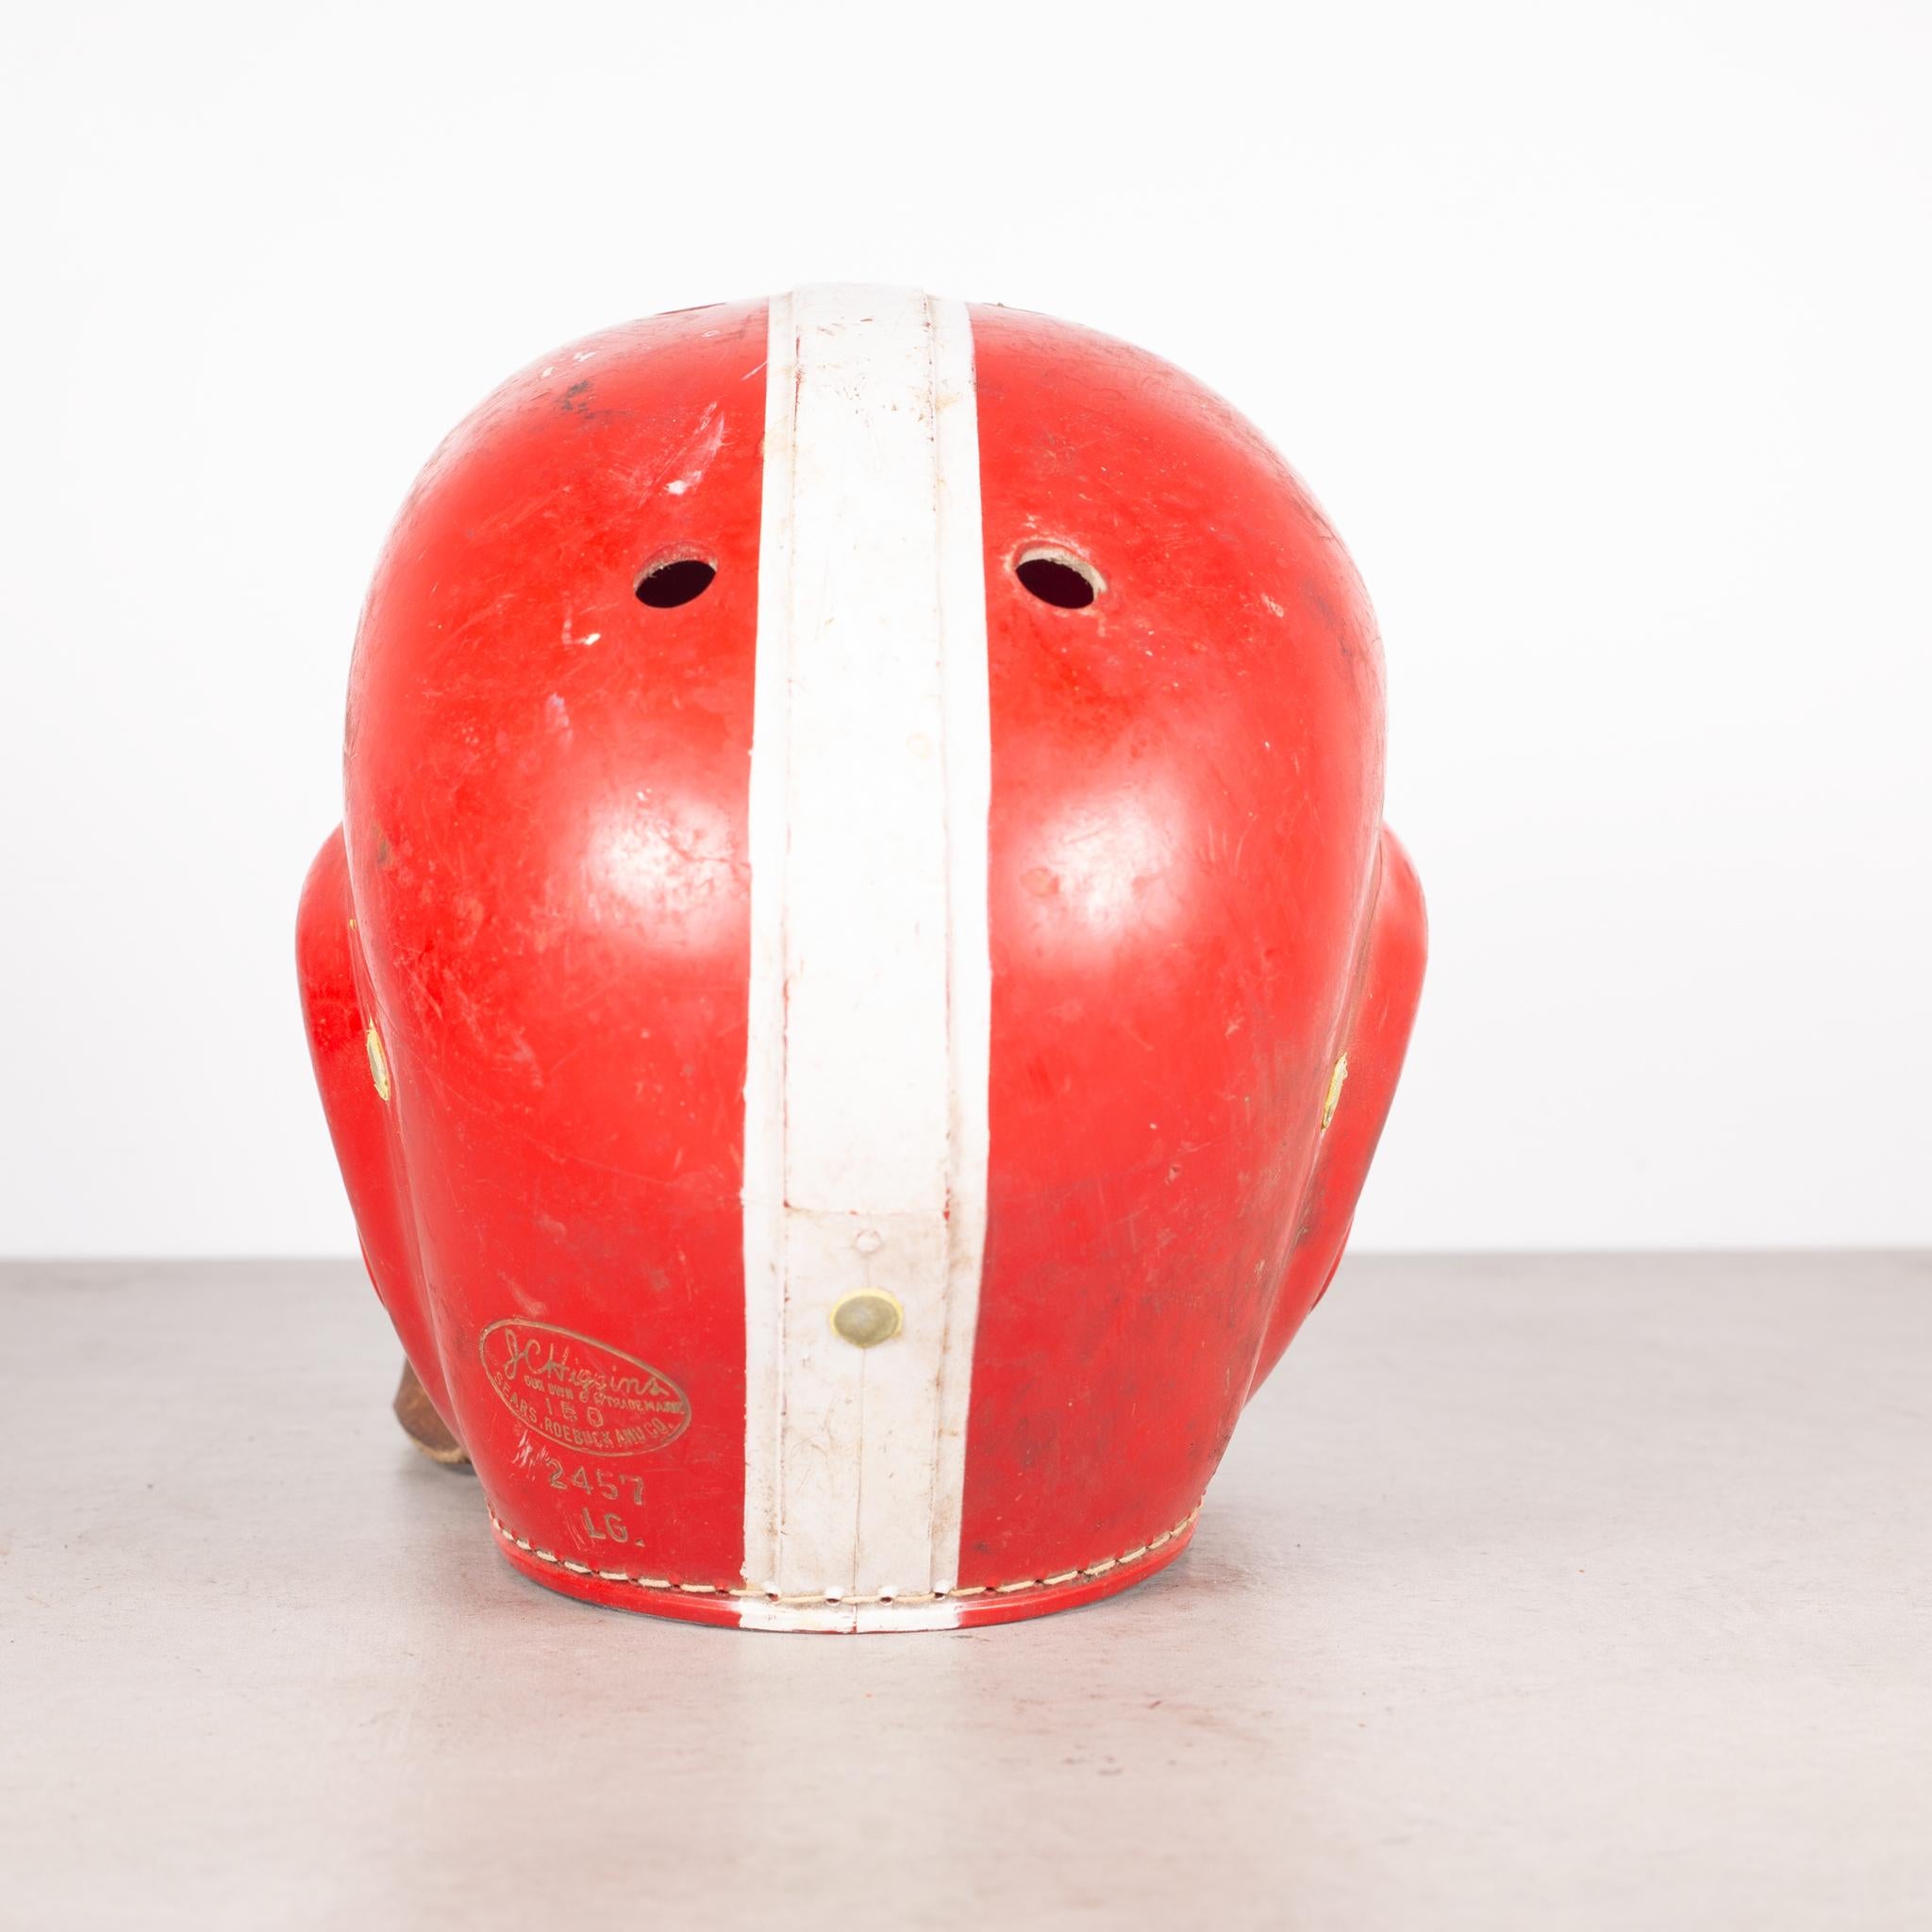 1960's football helmet